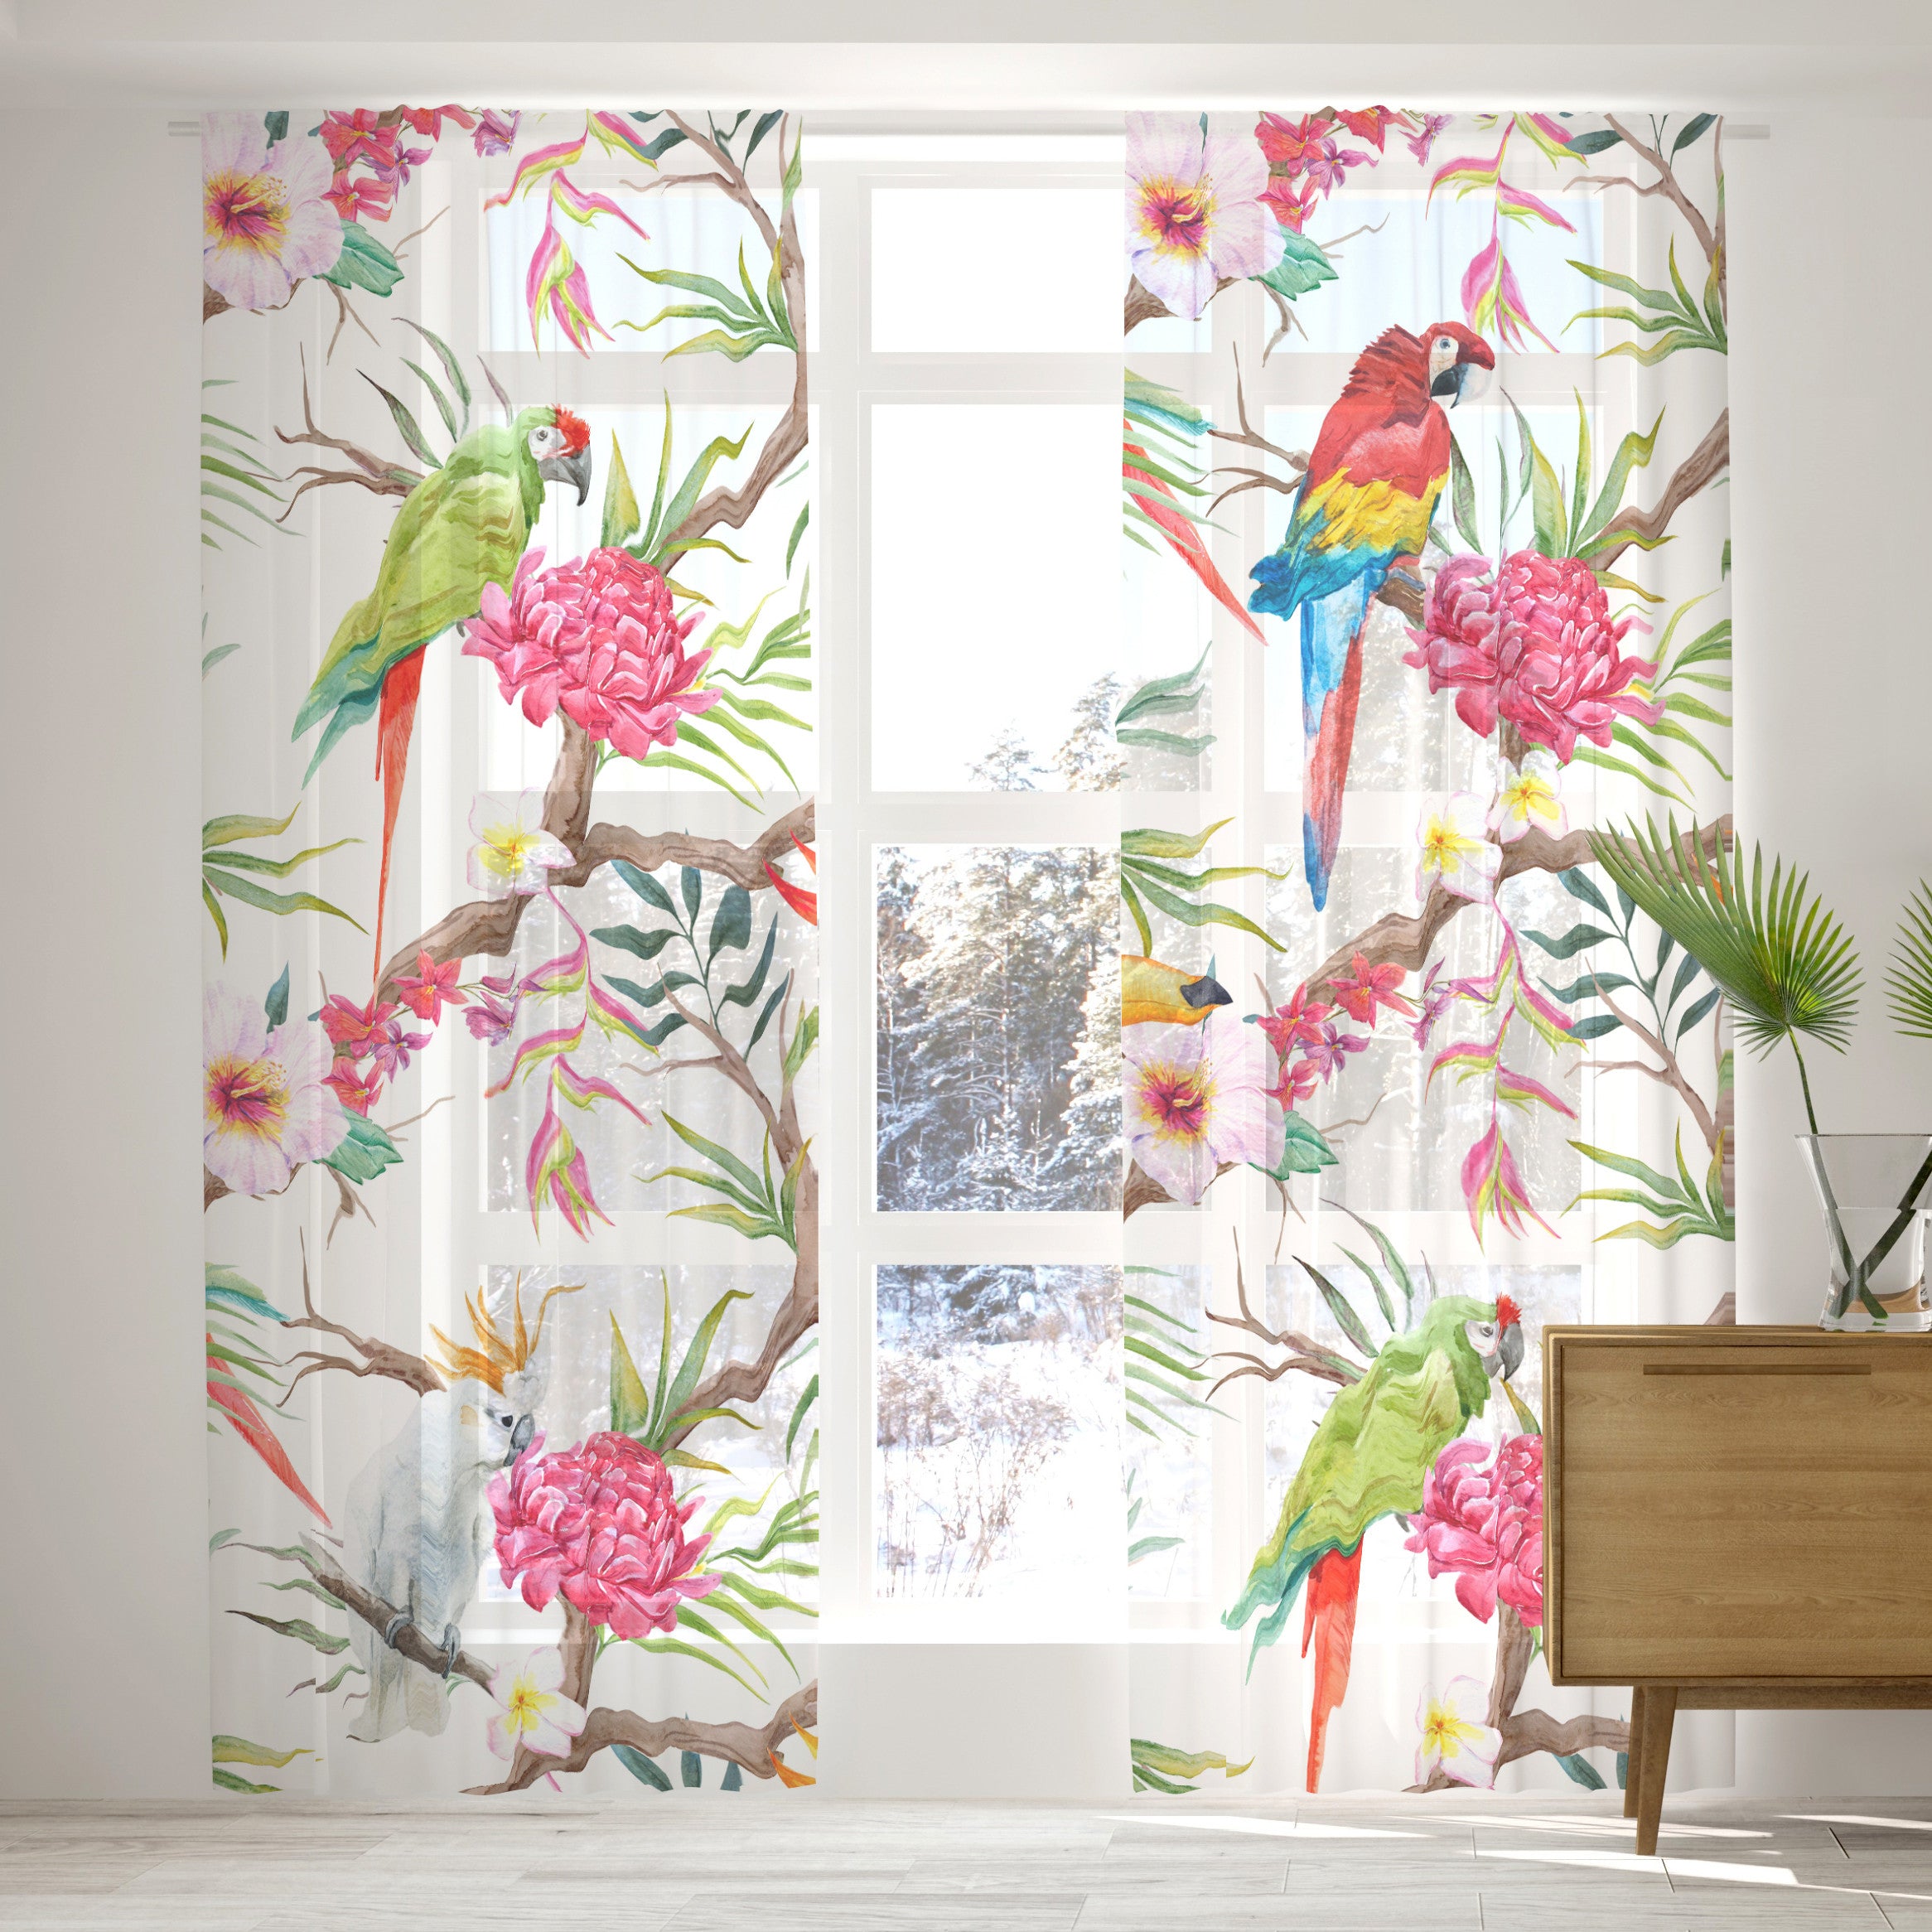 Raumhohes Fenster mit einer zweiteiligen Gardine, auf der Papageien und Blätter gedruckt sind